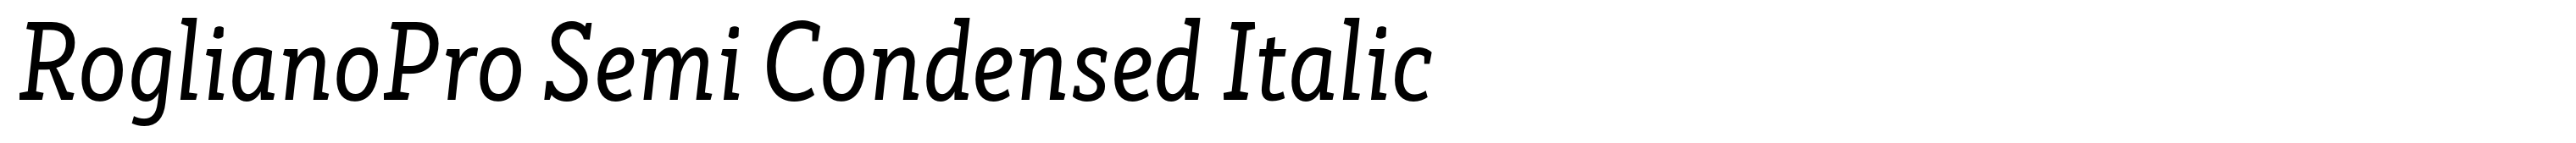 RoglianoPro Semi Condensed Italic